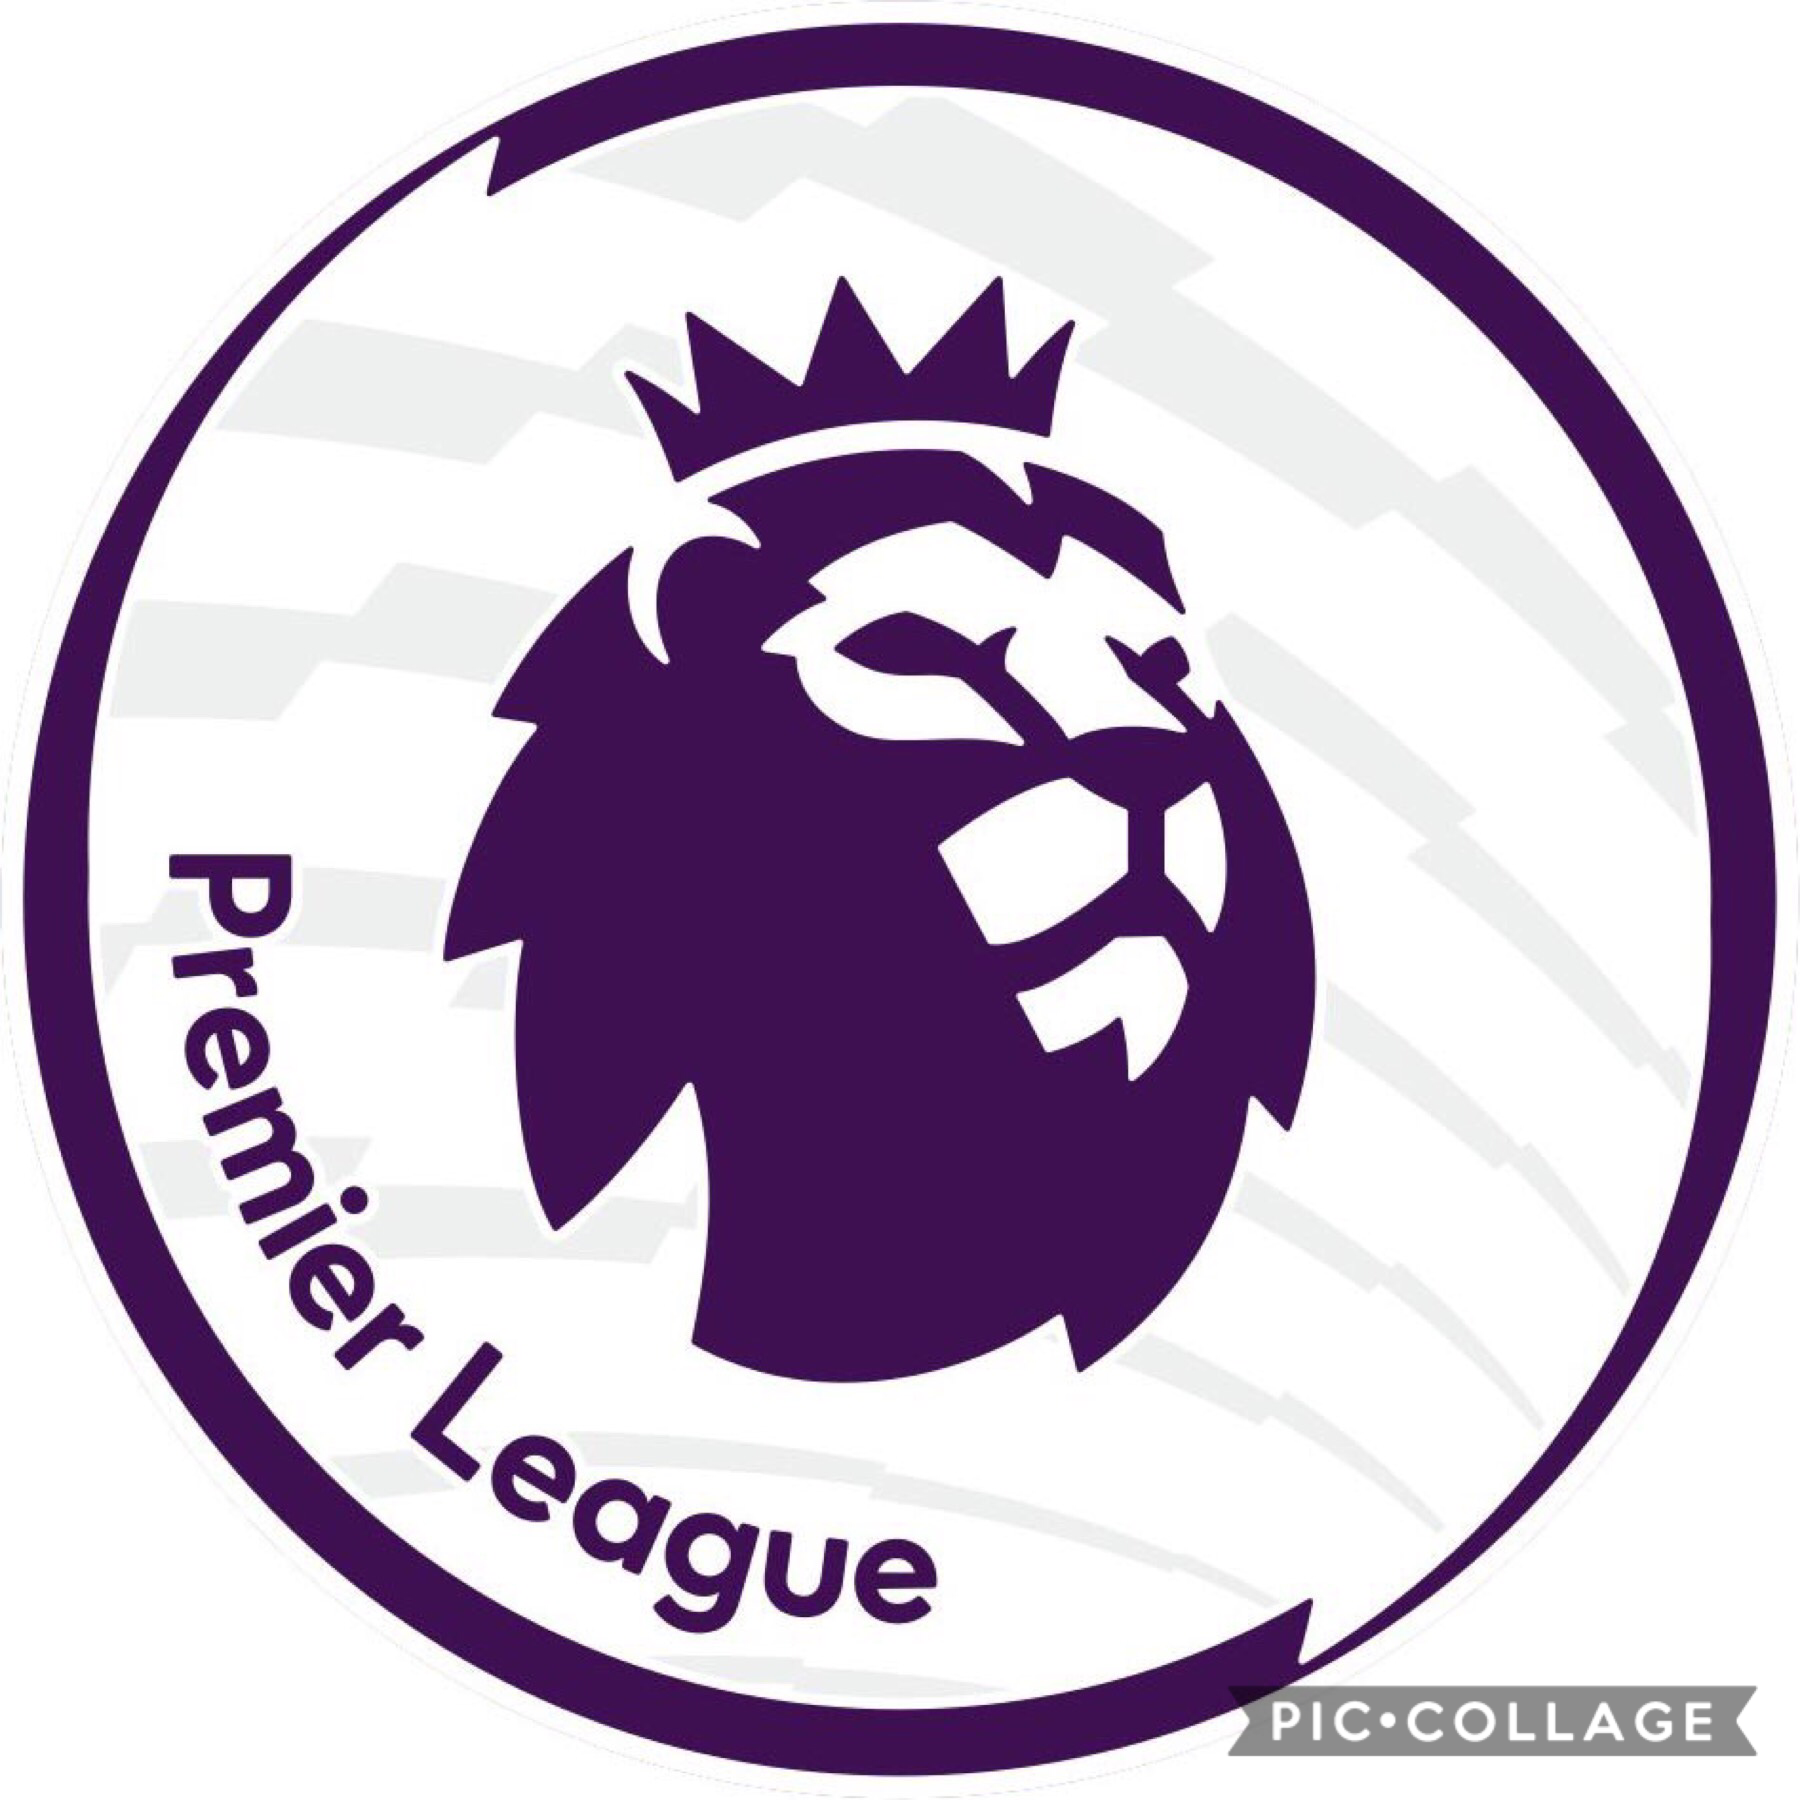 The Premier League Begins!